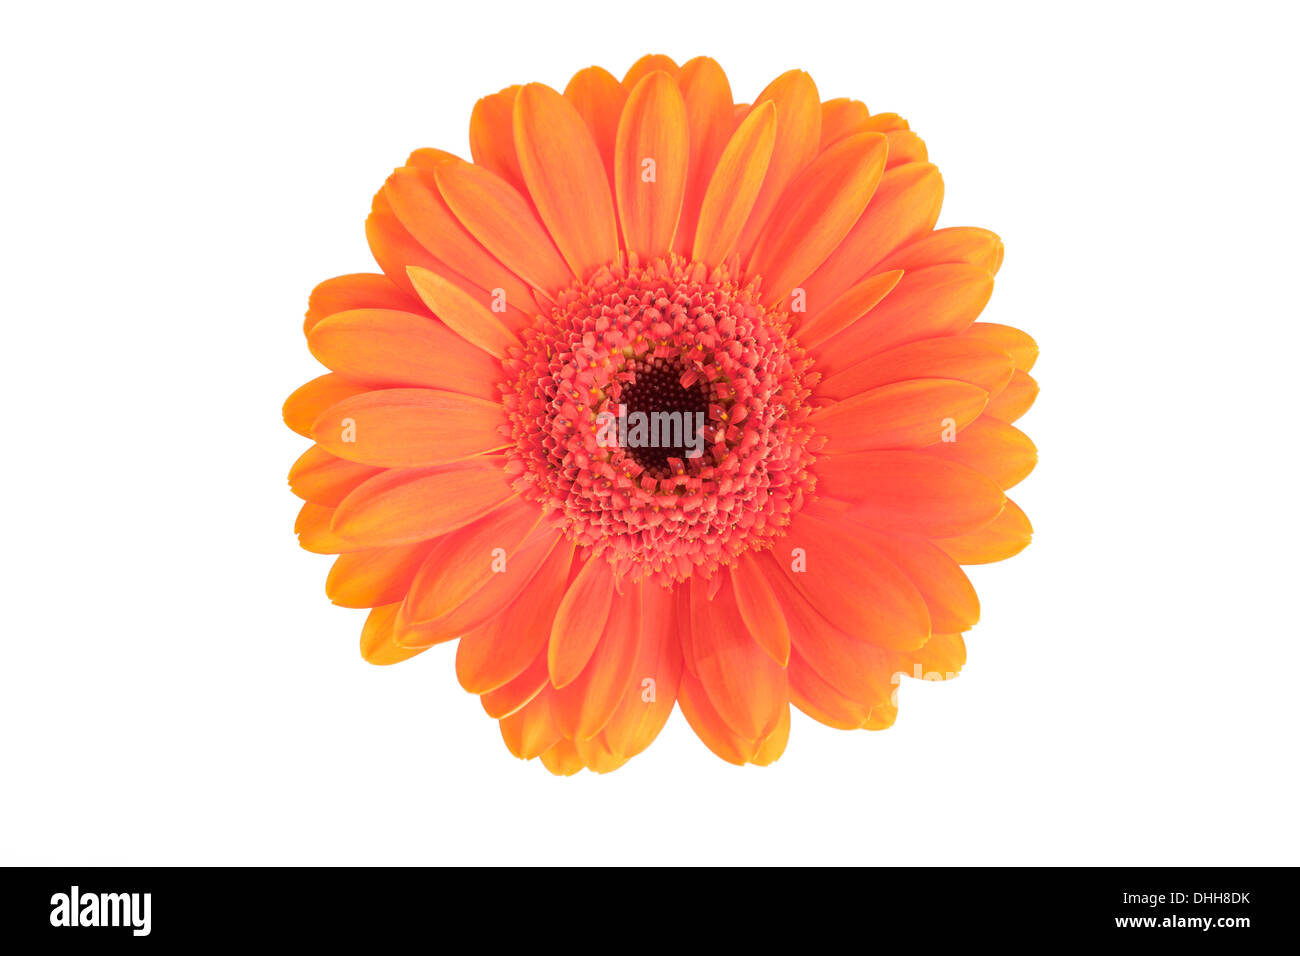 Orange Gerbera Flower isolated on white background. Stock Photo